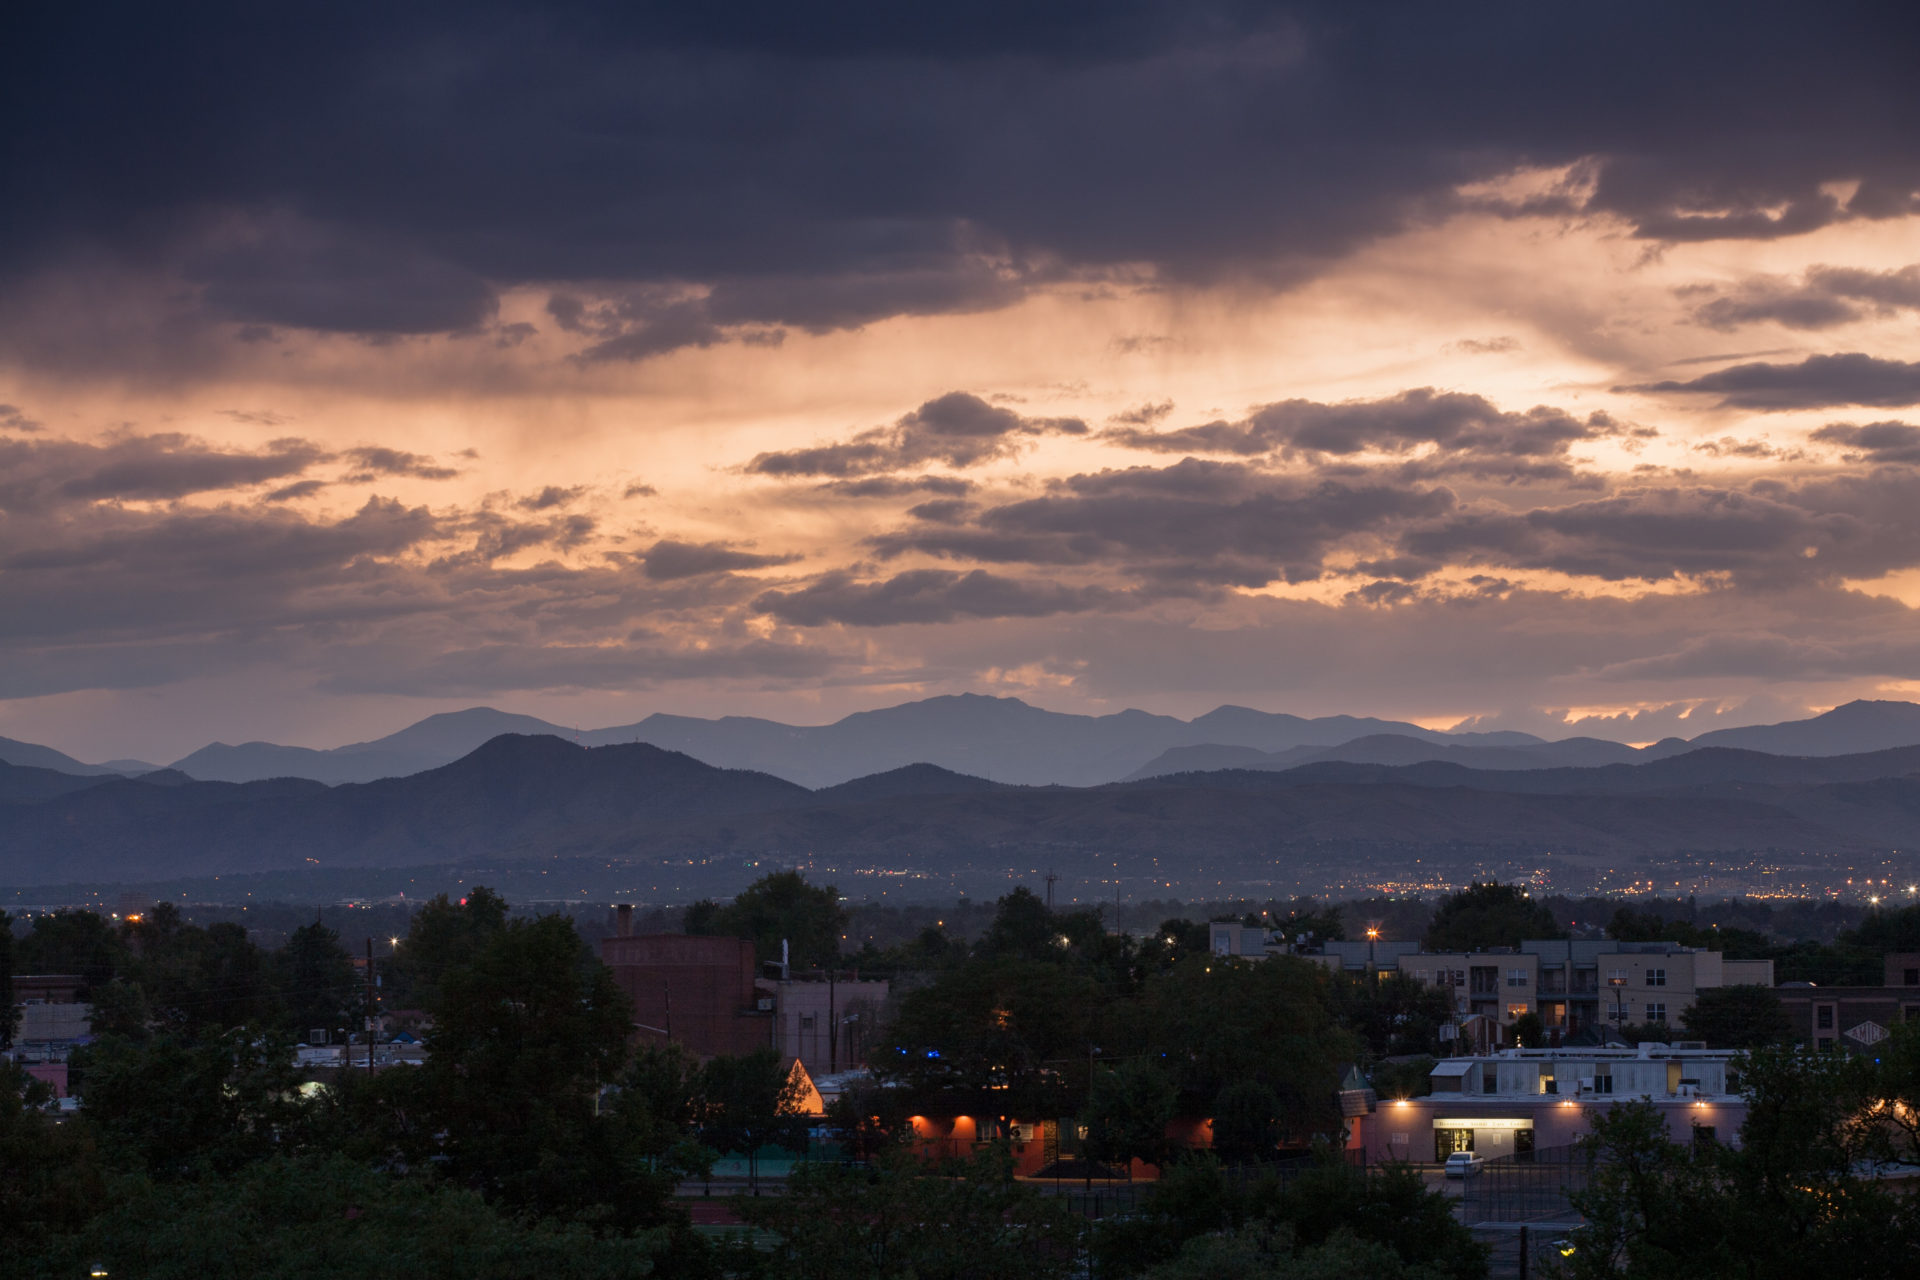 Mount Evans sunset - September 1, 2011